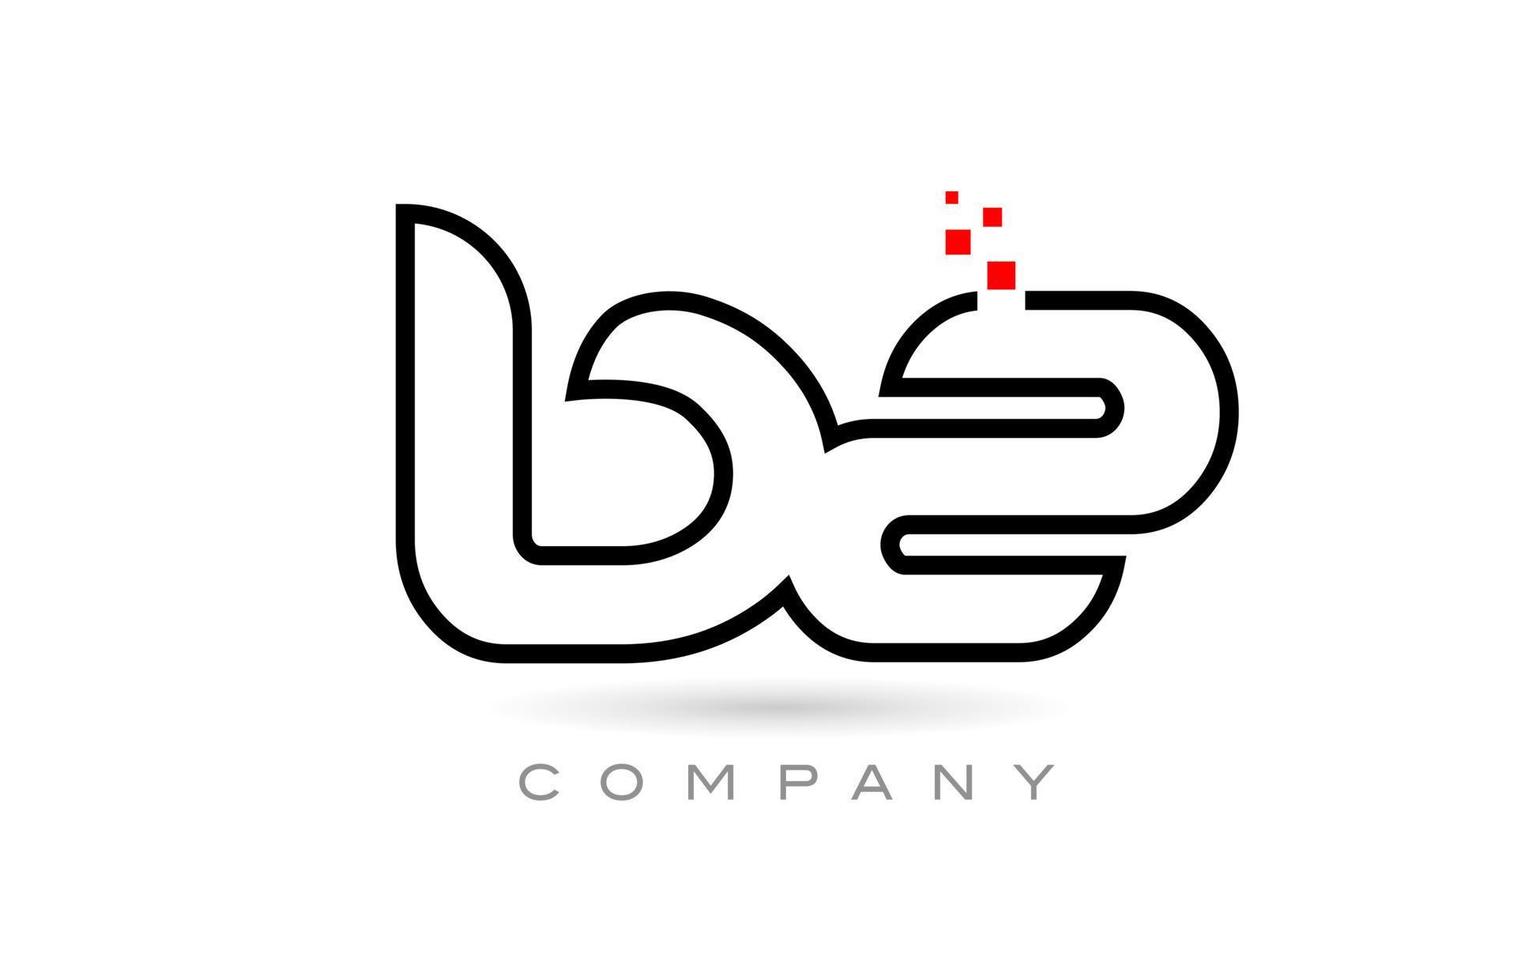 bz verbundenes Alphabet-Buchstaben-Logo-Symbol-Kombinationsdesign mit Punkten und roter Farbe. kreative Vorlage für Unternehmen und Unternehmen vektor